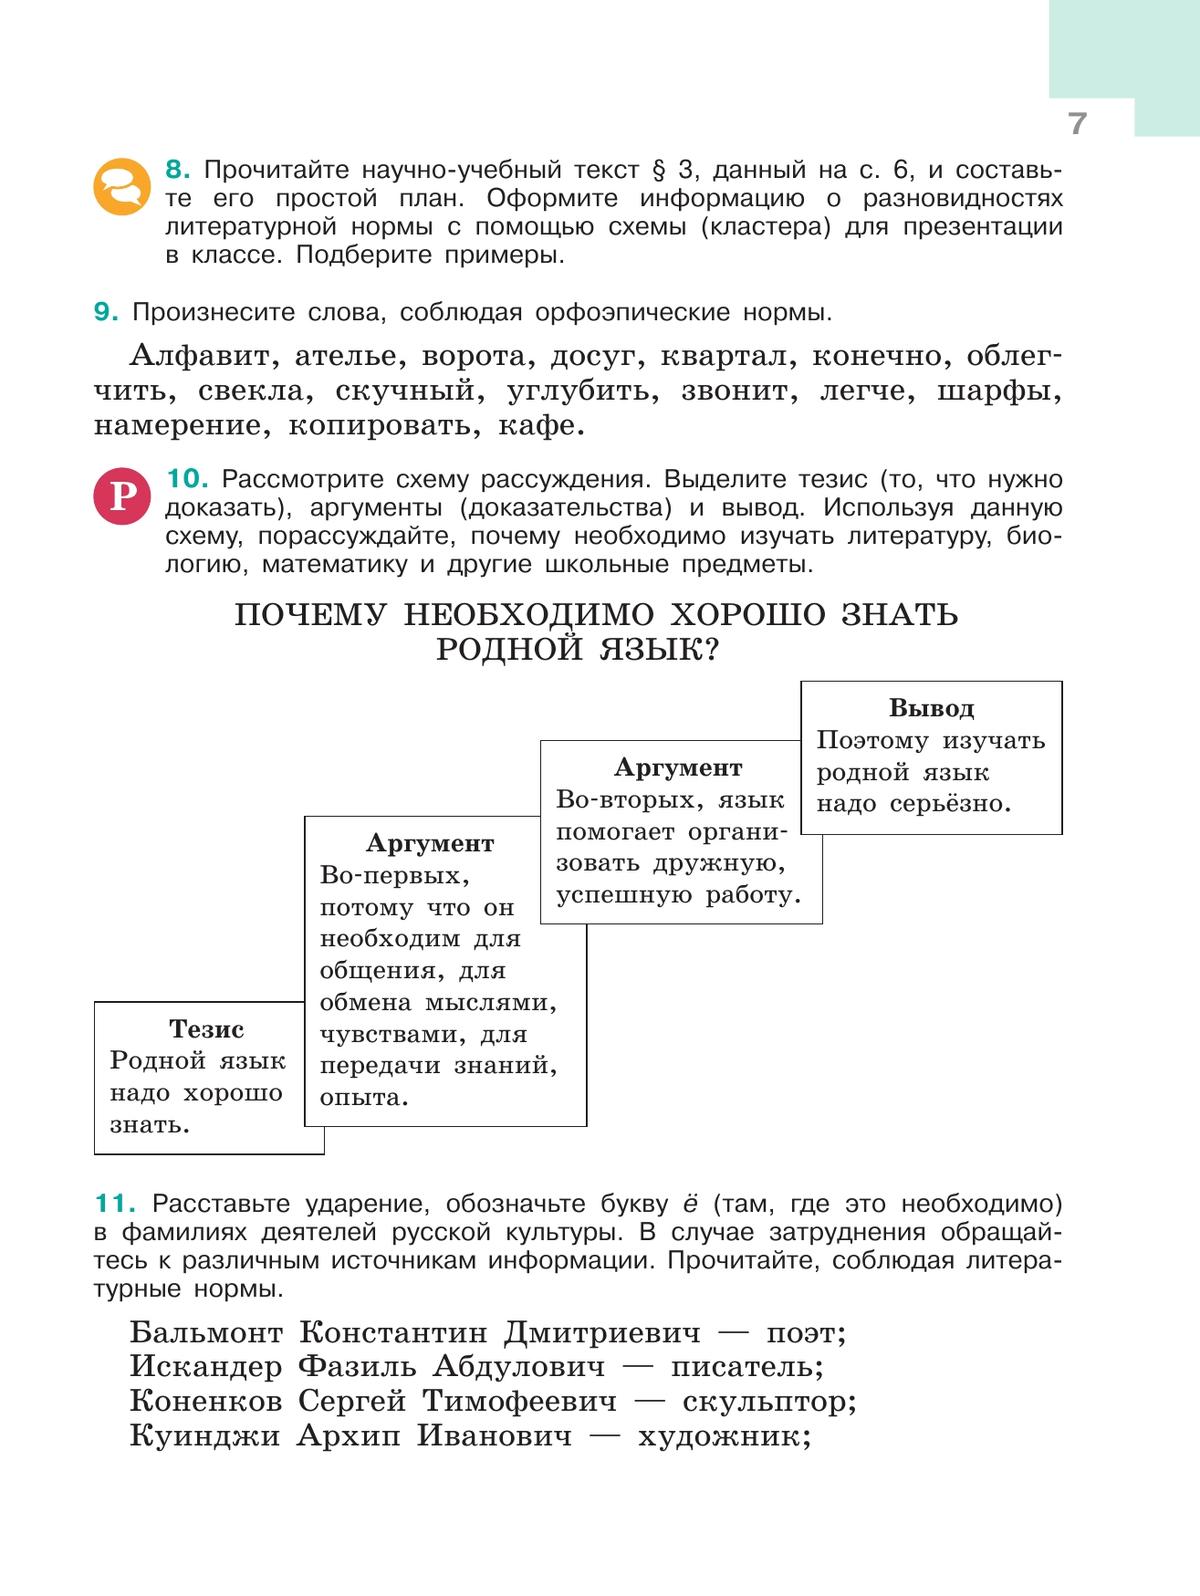 Русский язык. 6 класс. В 2-х ч. Ч. 1 9